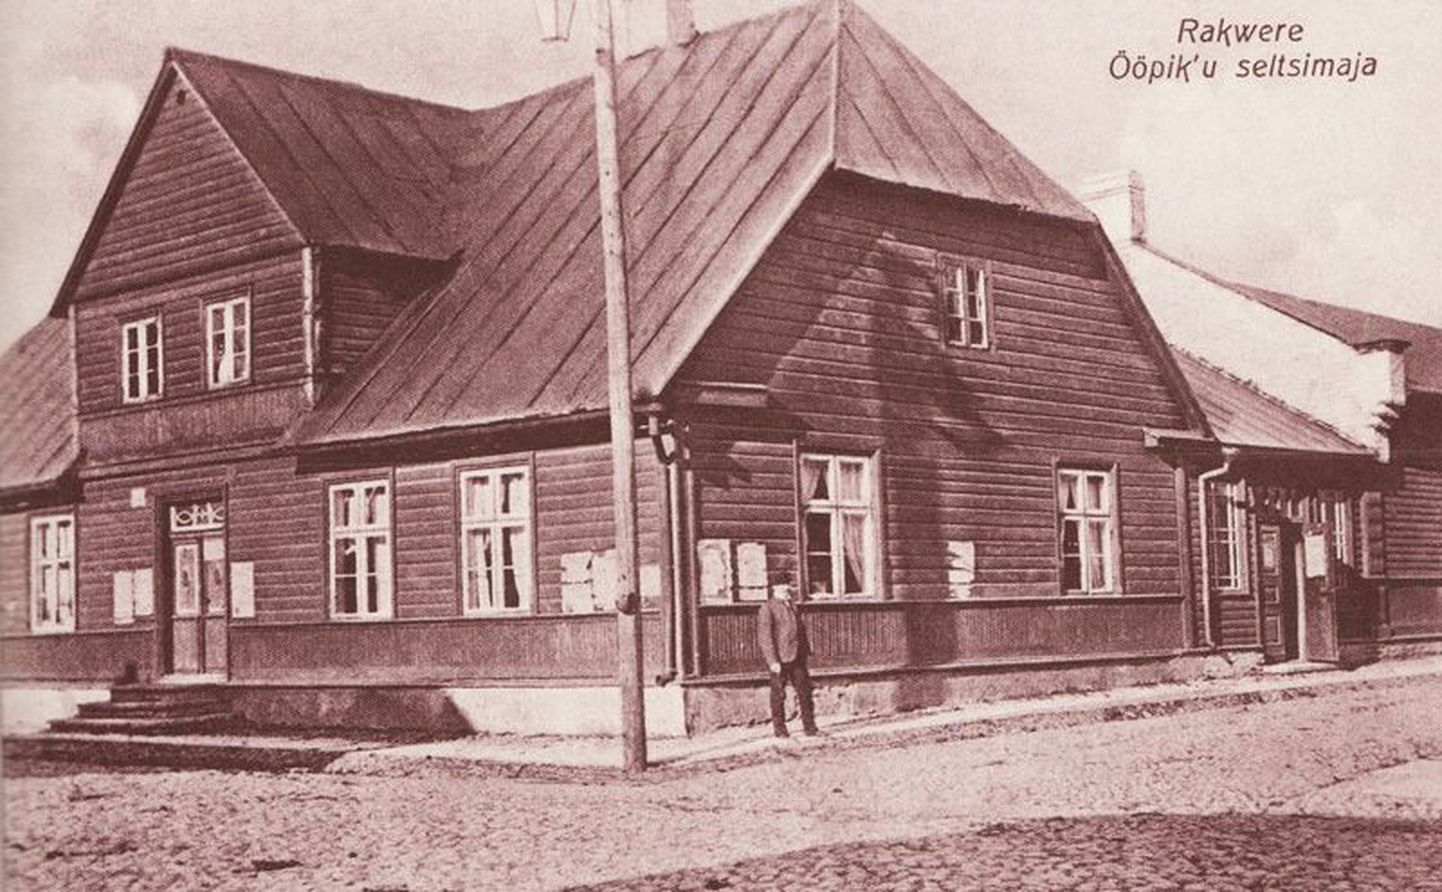 Omaaegne Ööpiku seltsimaja, mis hiljem haridusseltsi omaks sai, müüdi 1916. aastal võlgade katteks ärimees Ivan Rosnikovile.